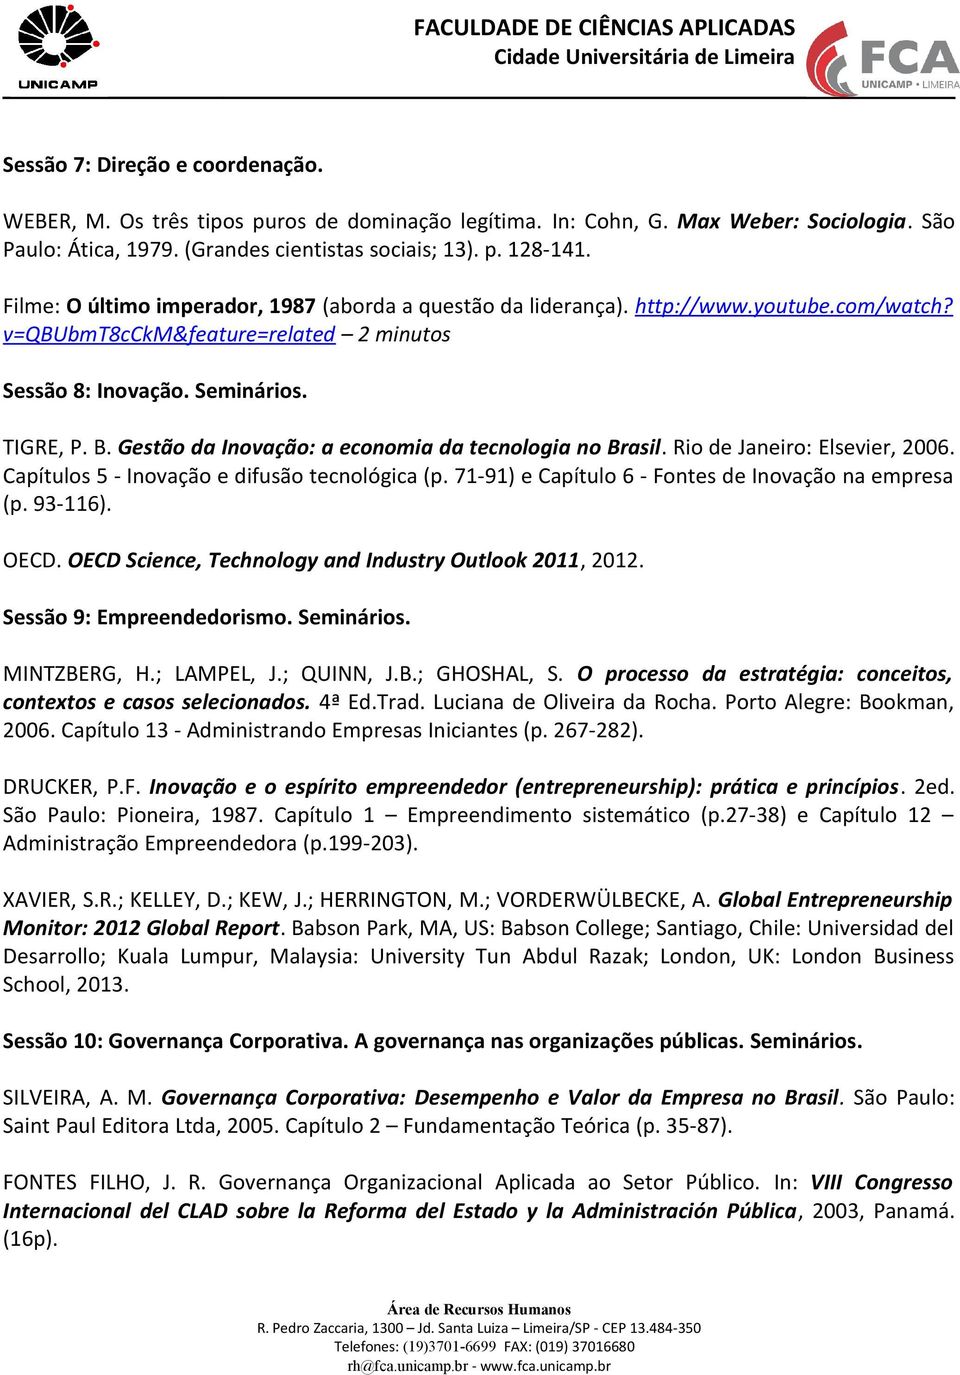 Gestão da Inovação: a economia da tecnologia no Brasil. Rio de Janeiro: Elsevier, 2006. Capítulos 5 - Inovação e difusão tecnológica (p. 71-91) e Capítulo 6 - Fontes de Inovação na empresa (p.